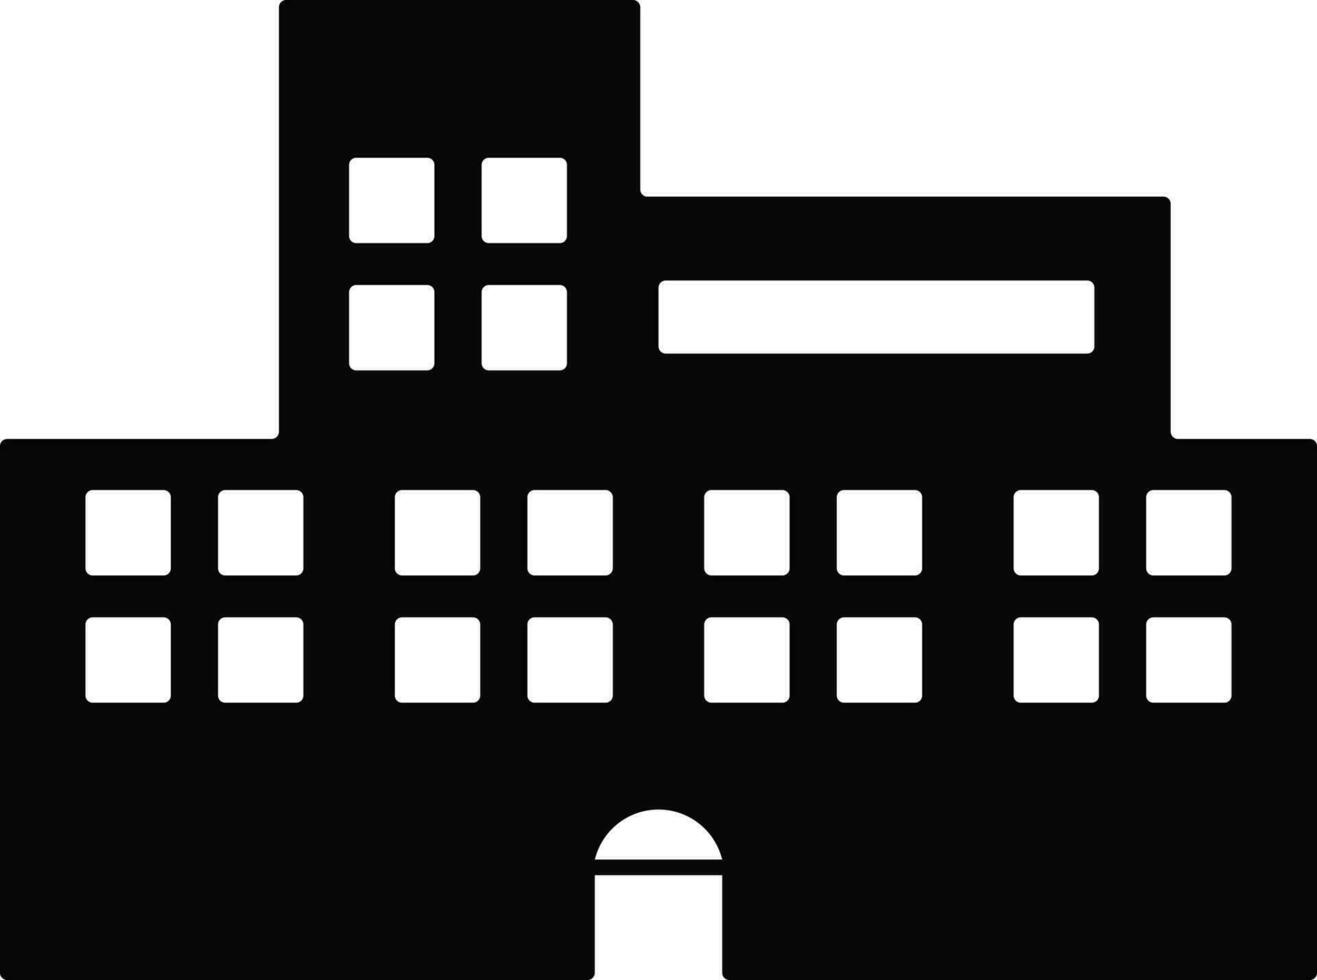 schwarz und Weiß Gebäude im eben Illustration. vektor